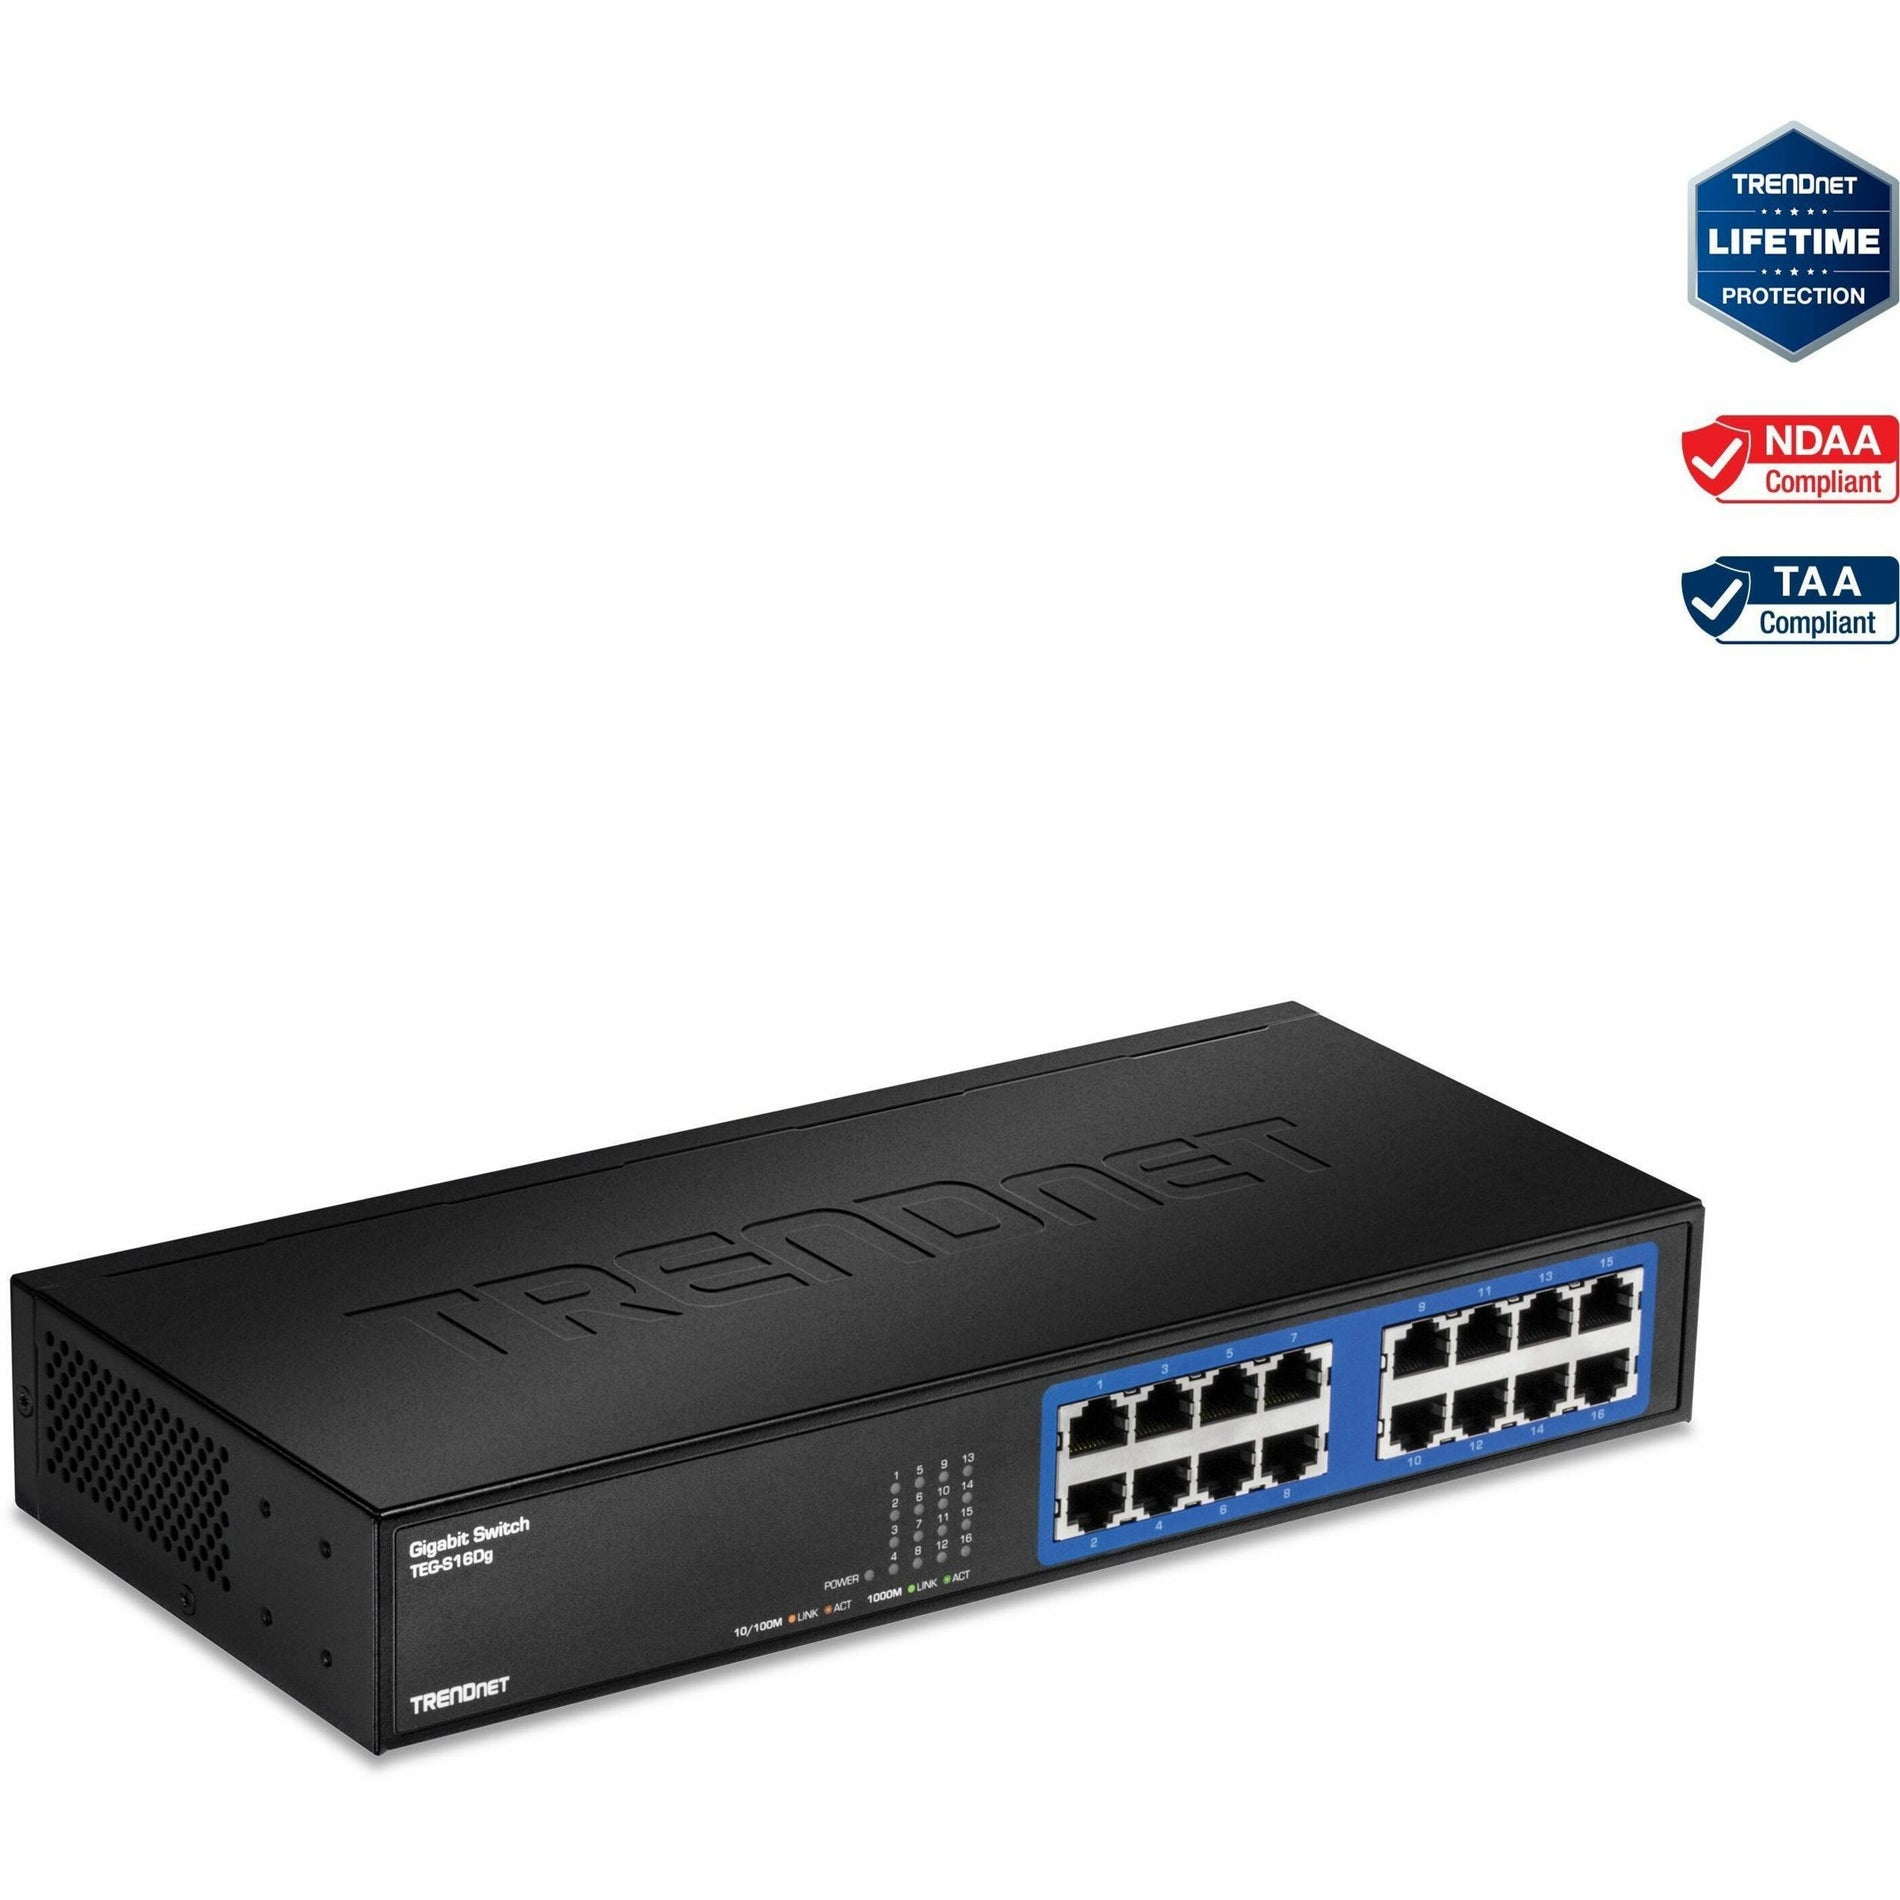 TRENDnet TEG-S16DG 16-port Gigabit GREENnet Switch, Ethernet-Network Switch, 32 Gbps Forwarding Capacity, Lifetime Protection, Black